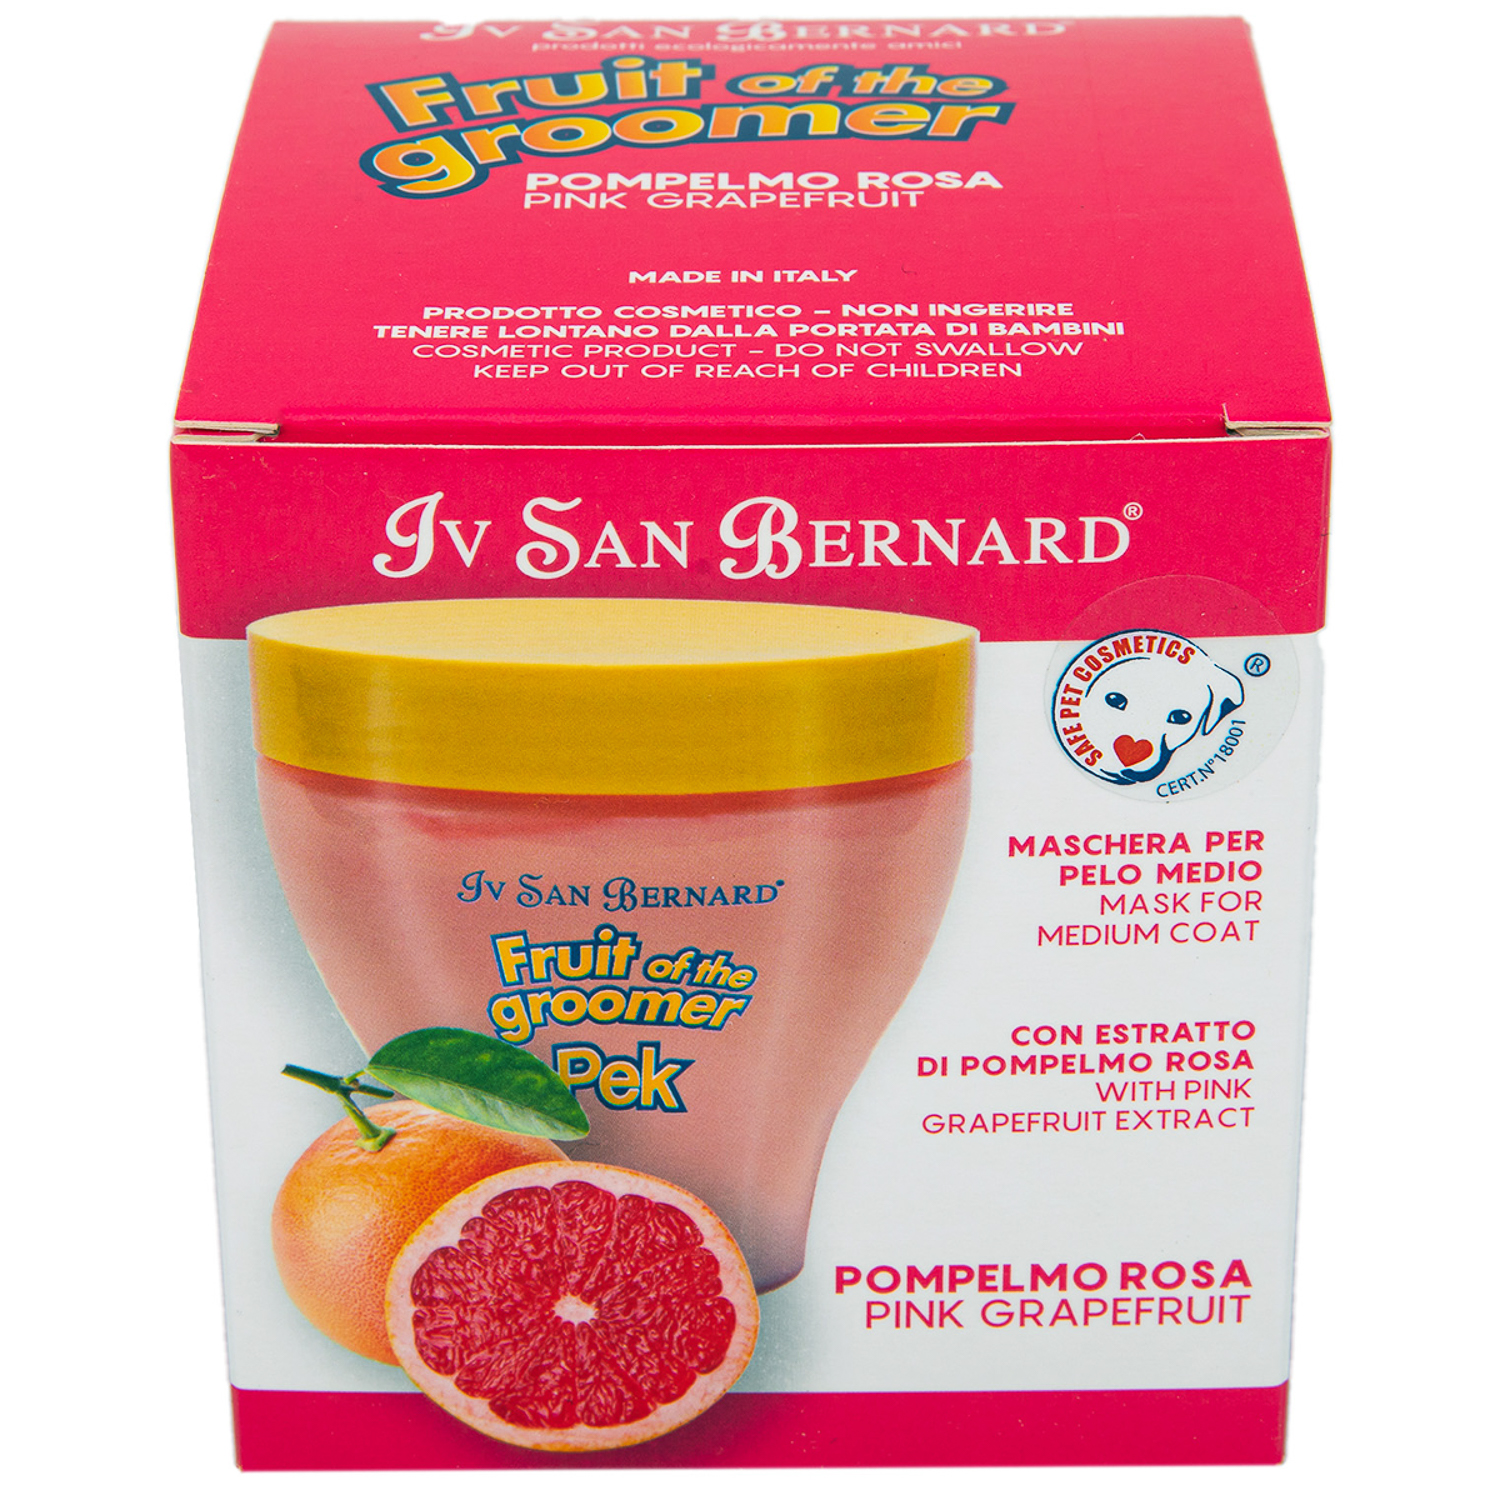 ISB Fruit of the Groomer Pink Grapefruit Восстанавливающая маска для шерсти средней длины с витаминами 250 мл